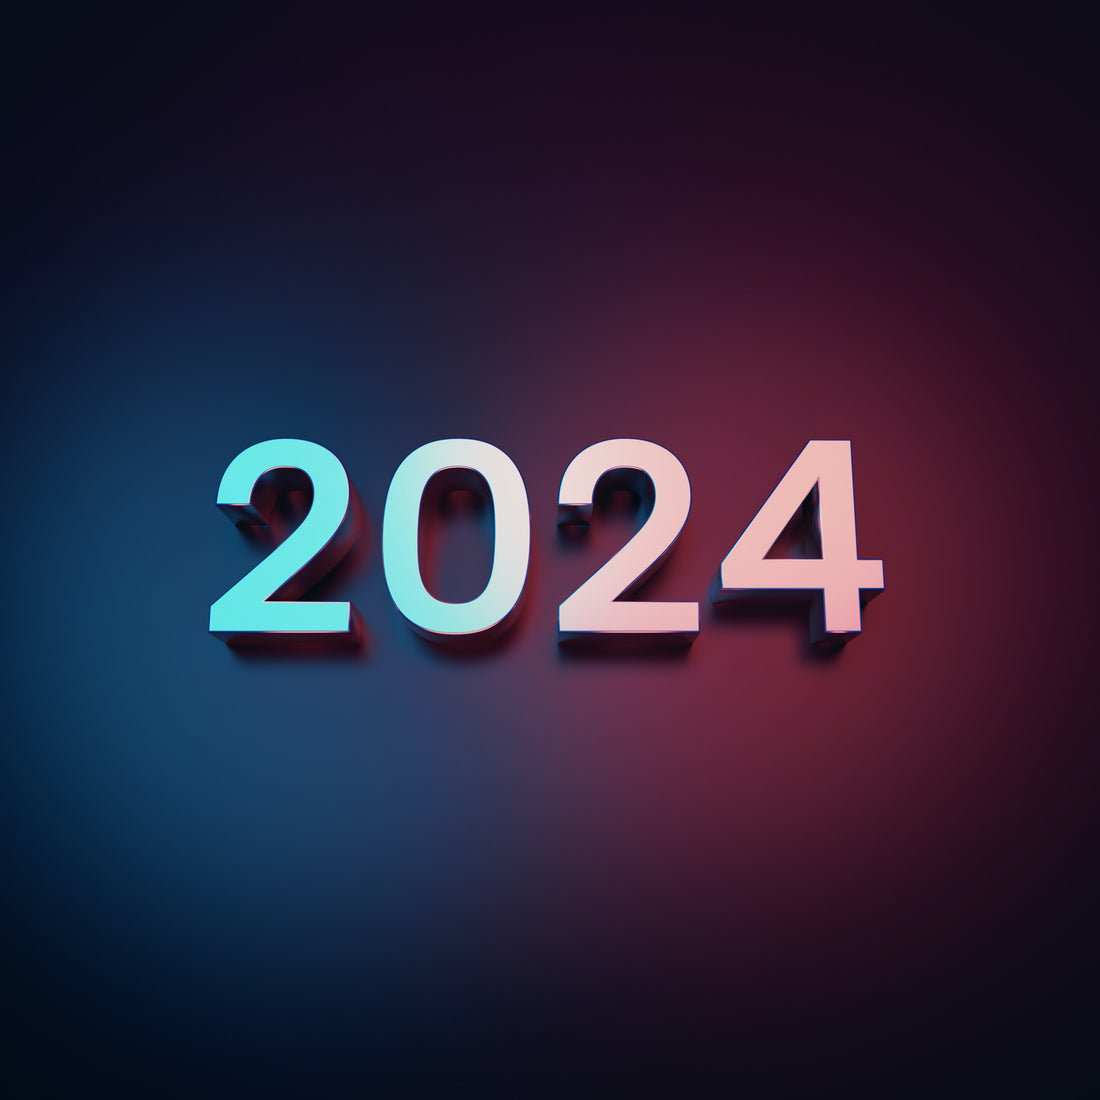 2024: A Look Ahead